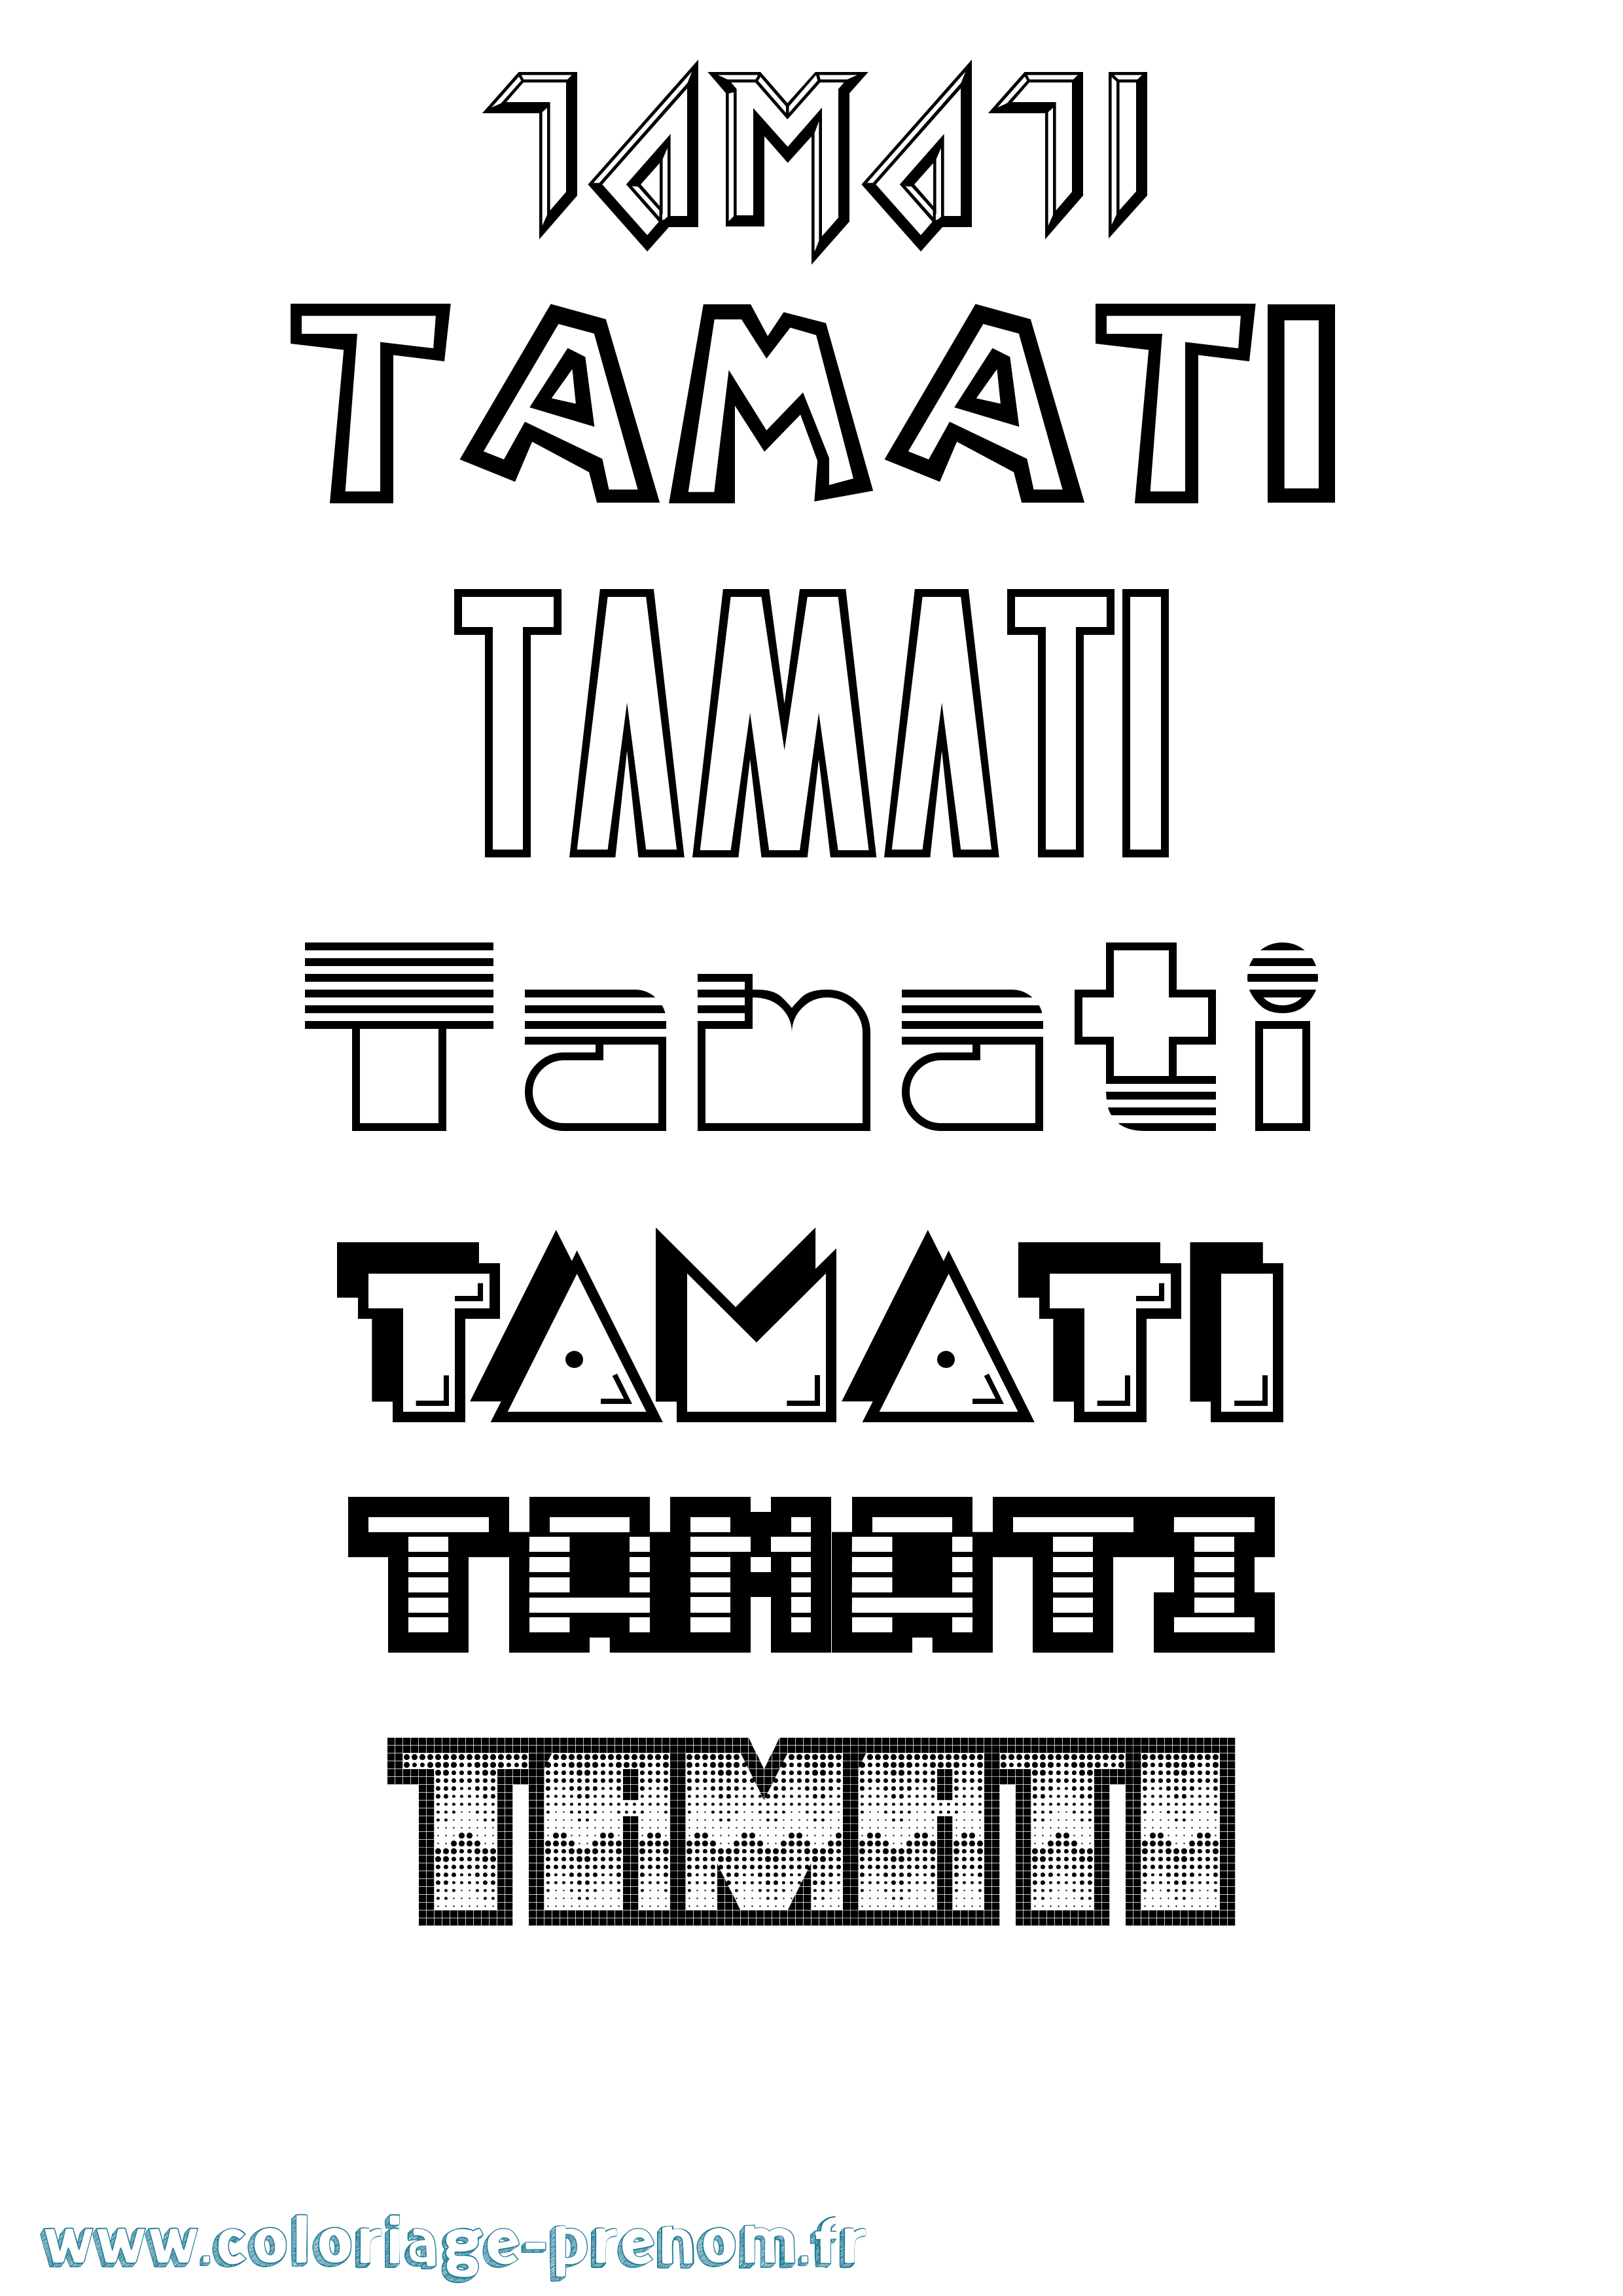 Coloriage prénom Tamati Jeux Vidéos